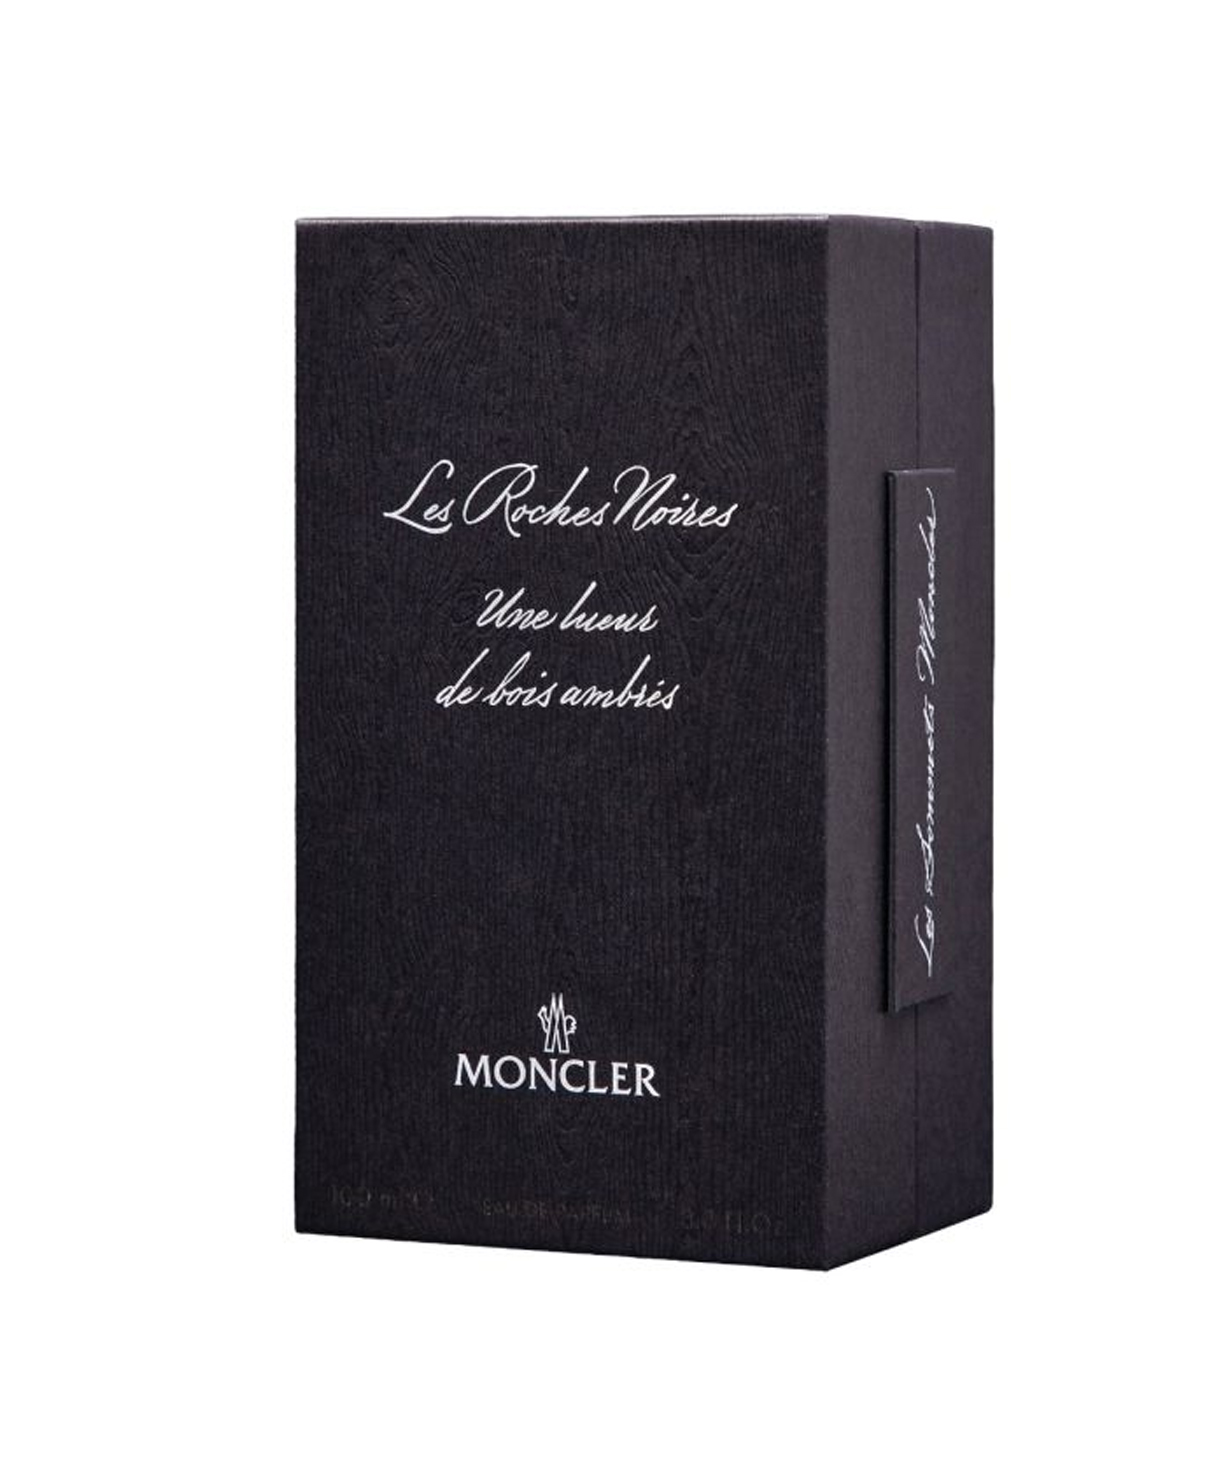 Perfume «Moncler» Les Roches Noires, unisex, 100 ml